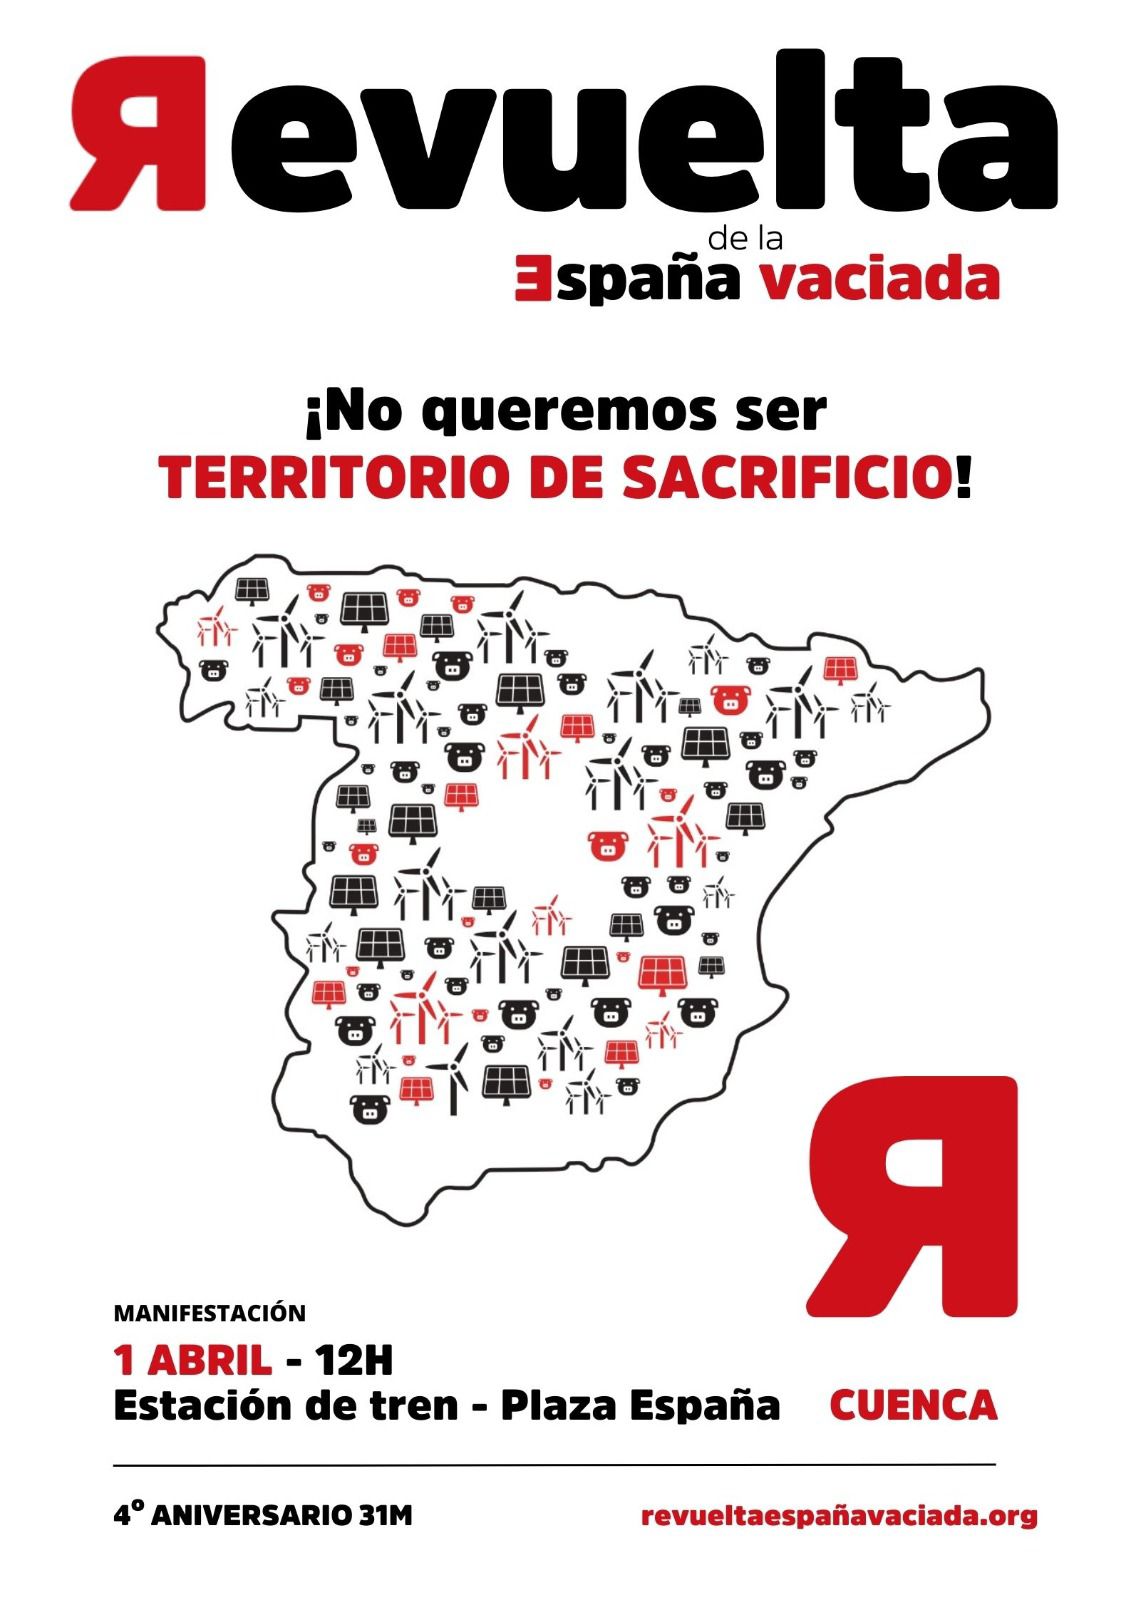 La Revuelta de la España vaciada denunciará en el aniversario del 31M que no quiere ser territorio de sacrificio